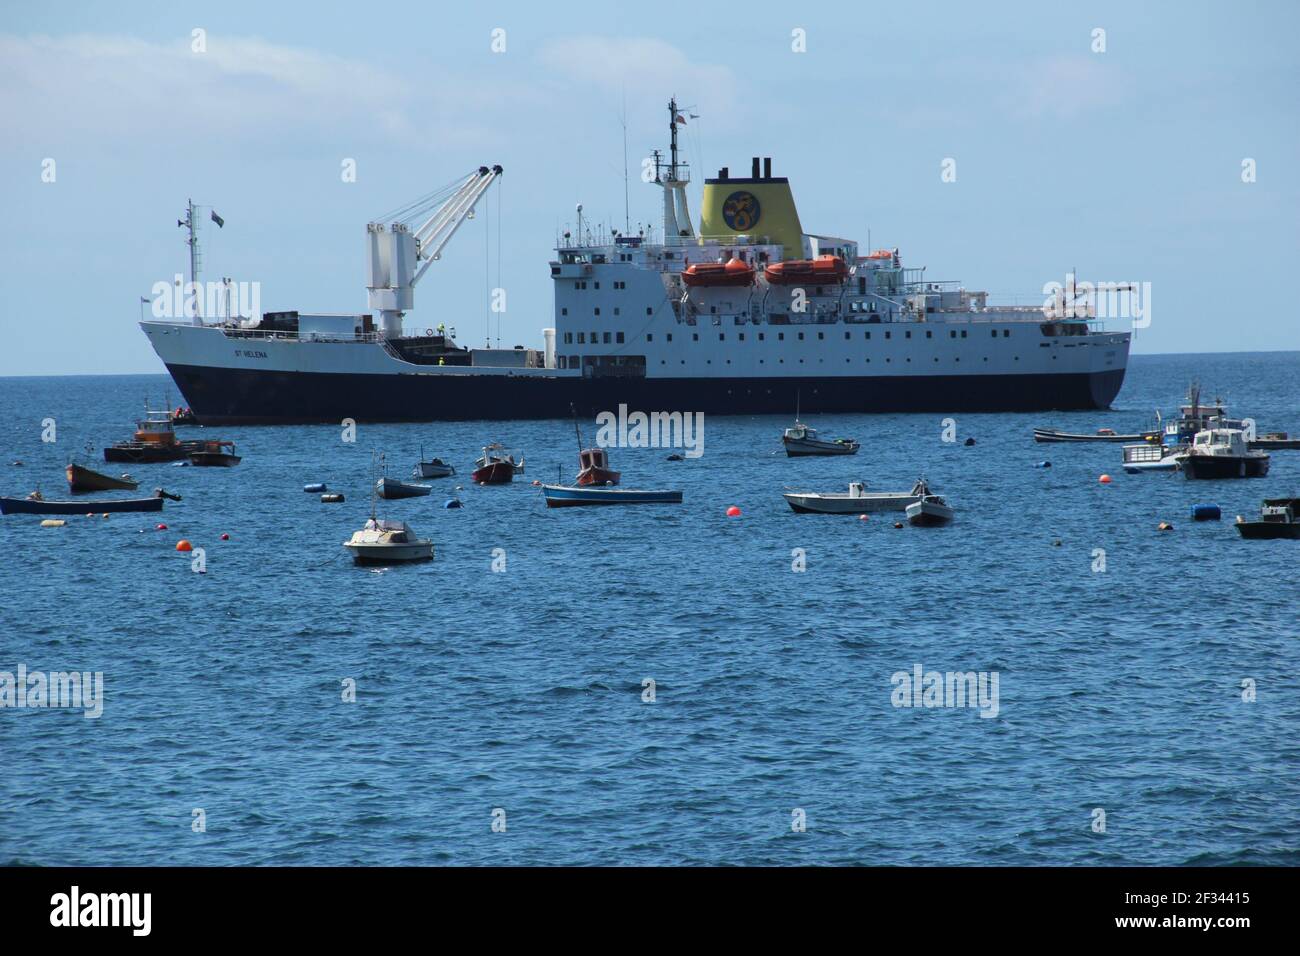 ST. HELENA - 7. OKTOBER 2015: Das RMS St. Helena in James Bay in St. Helena nach einer seiner letzten Reisen zur Insel im Atlantischen Ozean Stockfoto